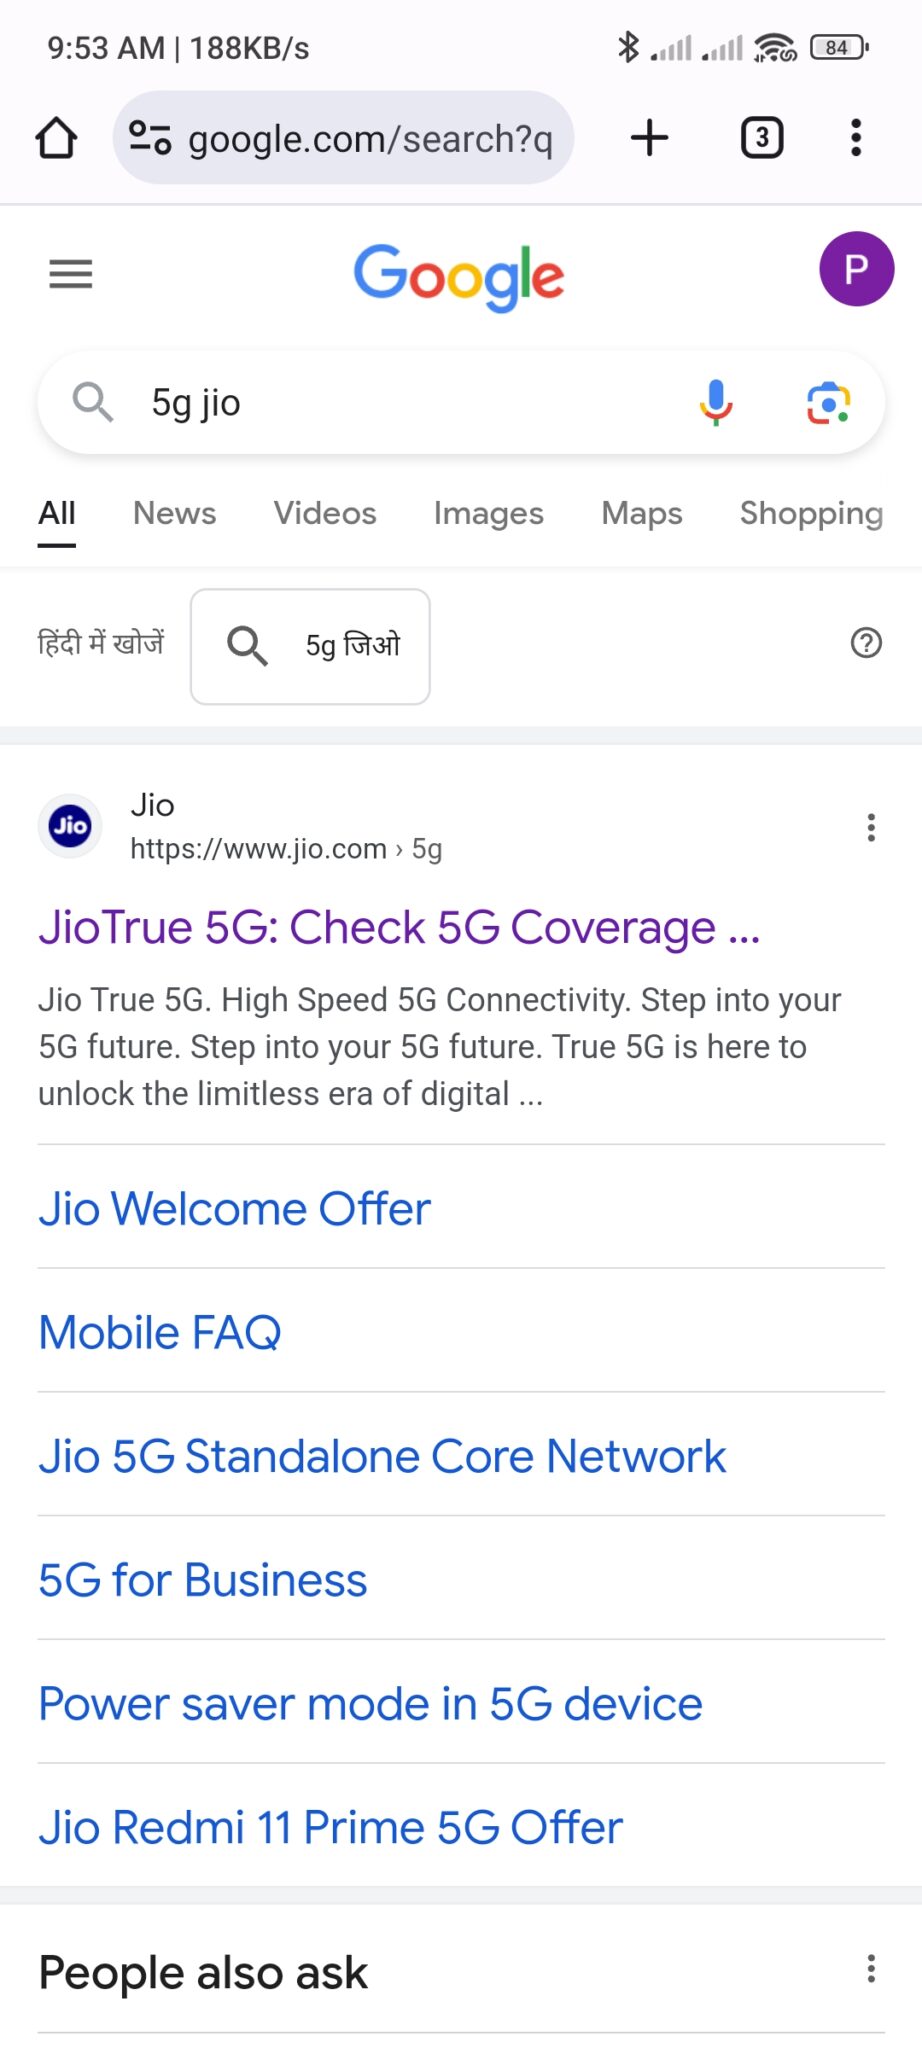 Google me 5G jio search kare